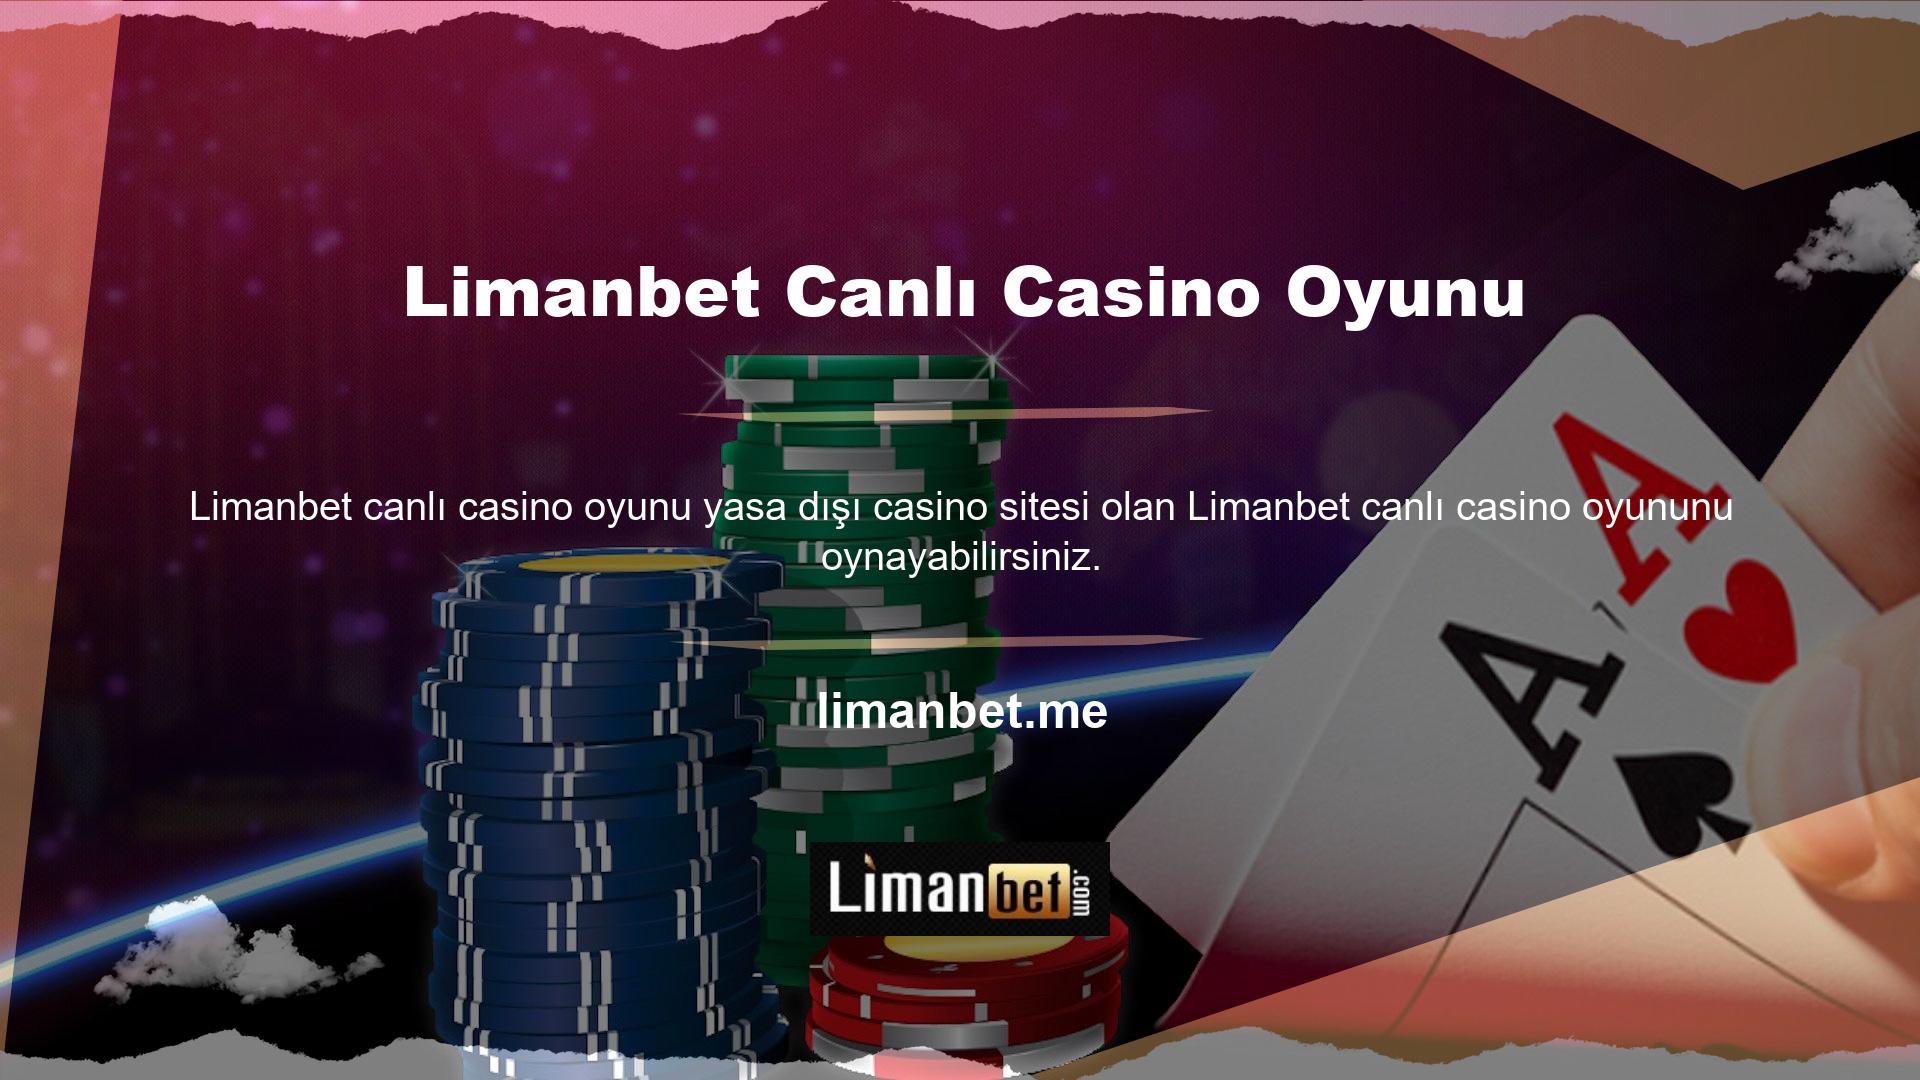 Casinoda canlı olarak oynanan poker, rulet, blackjack ve bakara izleyebilirsiniz